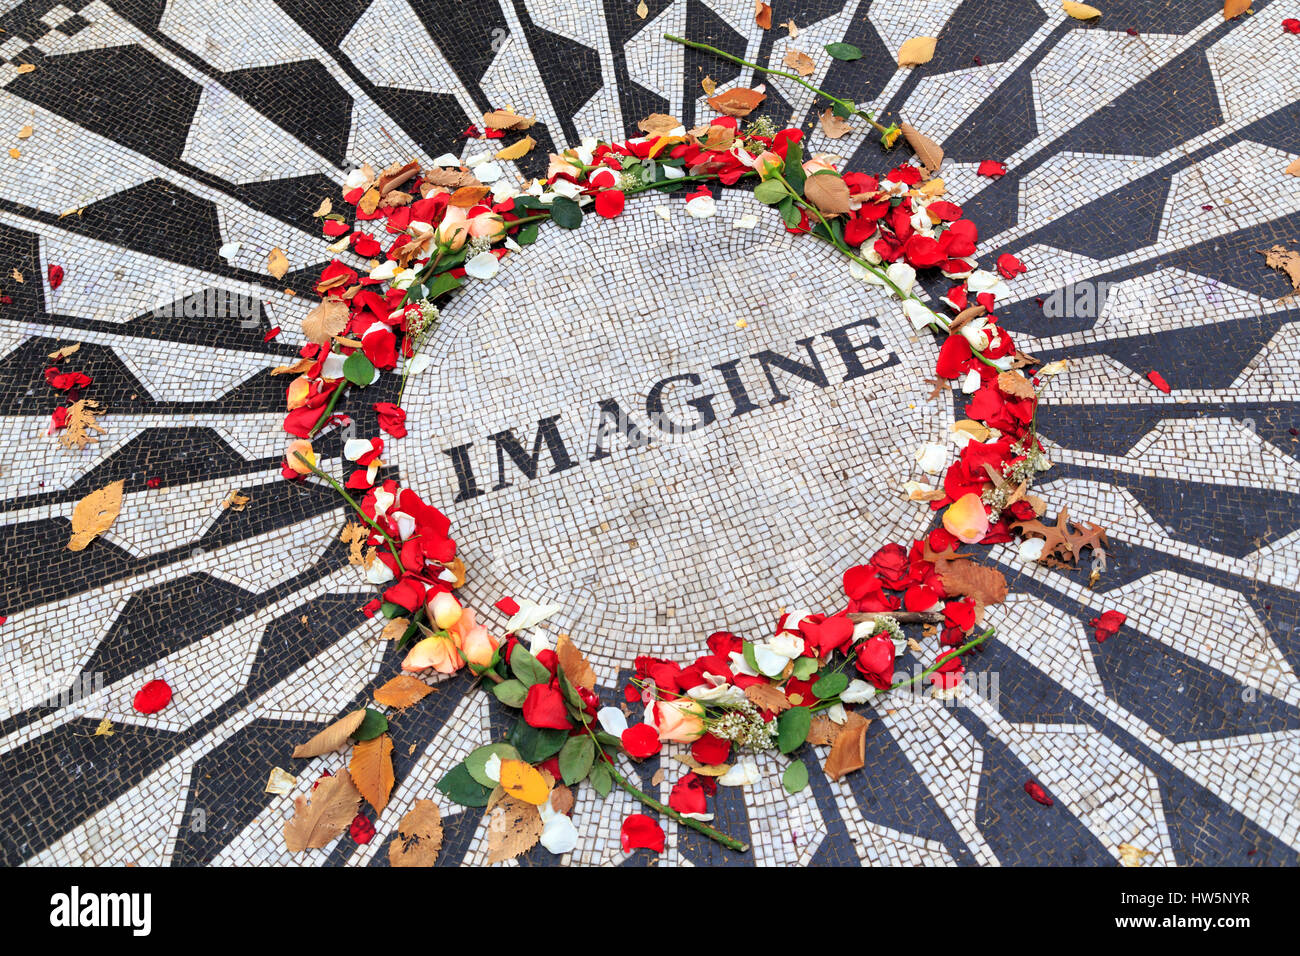 USA, New York, Manhattan, Central Park, champs de fraises, imaginez Mosaic Banque D'Images